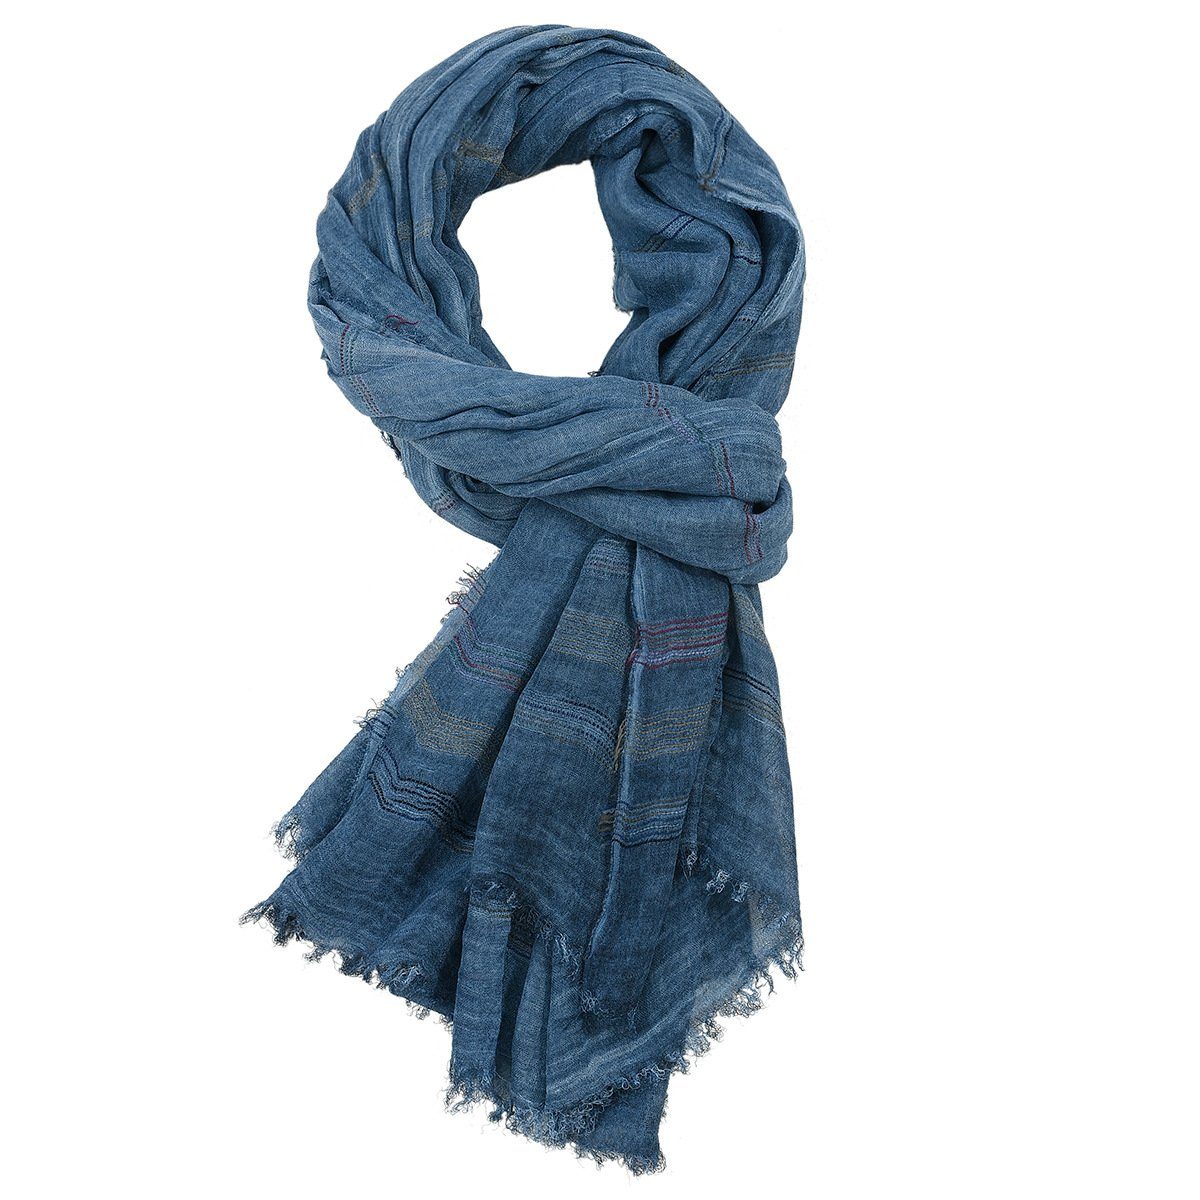 GelldG Modeschal Reversible Warme und weiche Unisex Schal Stola Wrap Solid Color marineblau | Modeschals